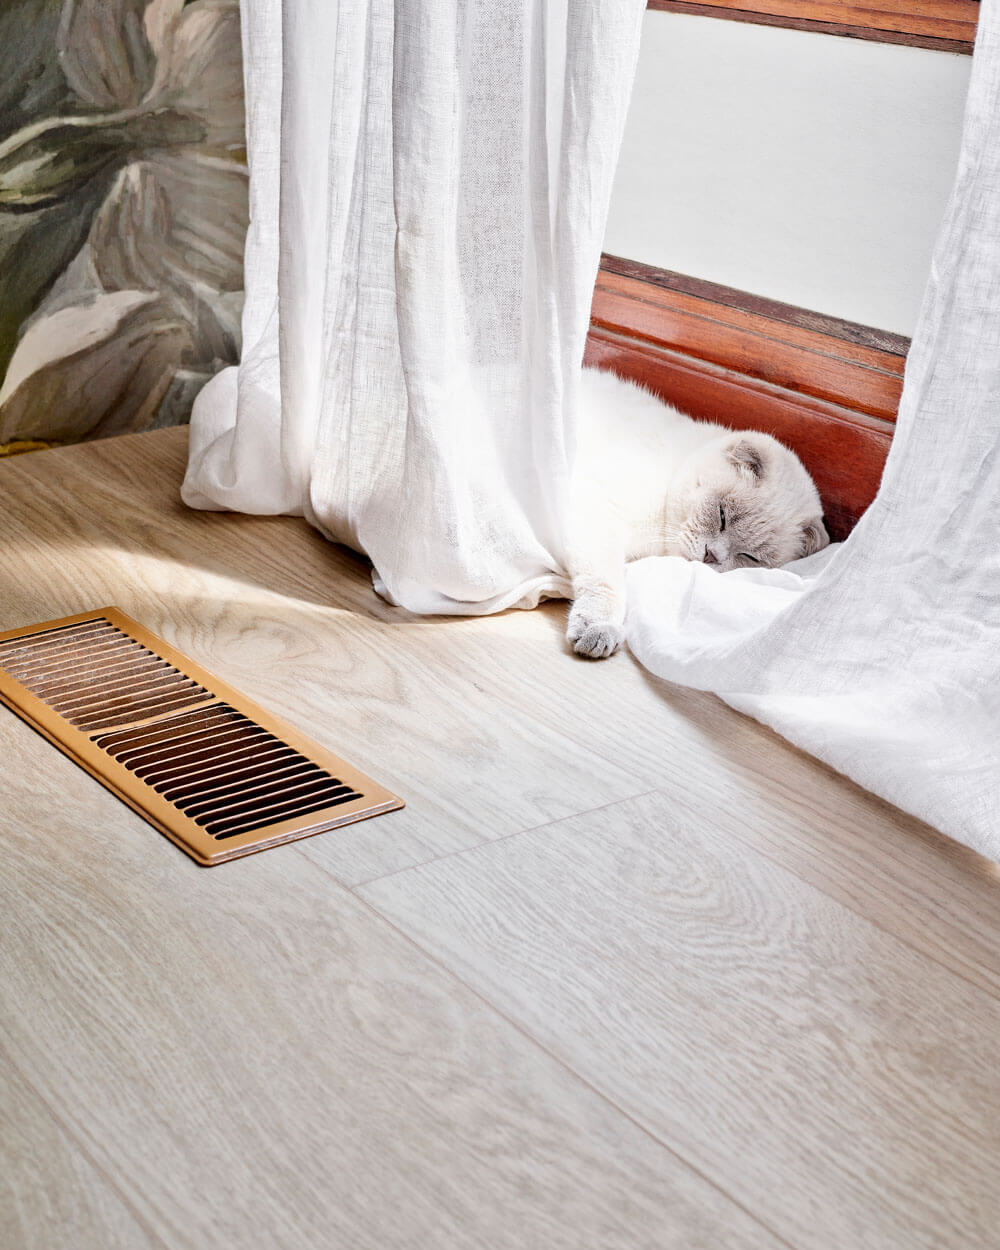 Een witte kat ligt te slapen tegen het raamkozijn op de Moduleo LayRed Laurel Oak 51230 Embossed luxe vinylvloer.